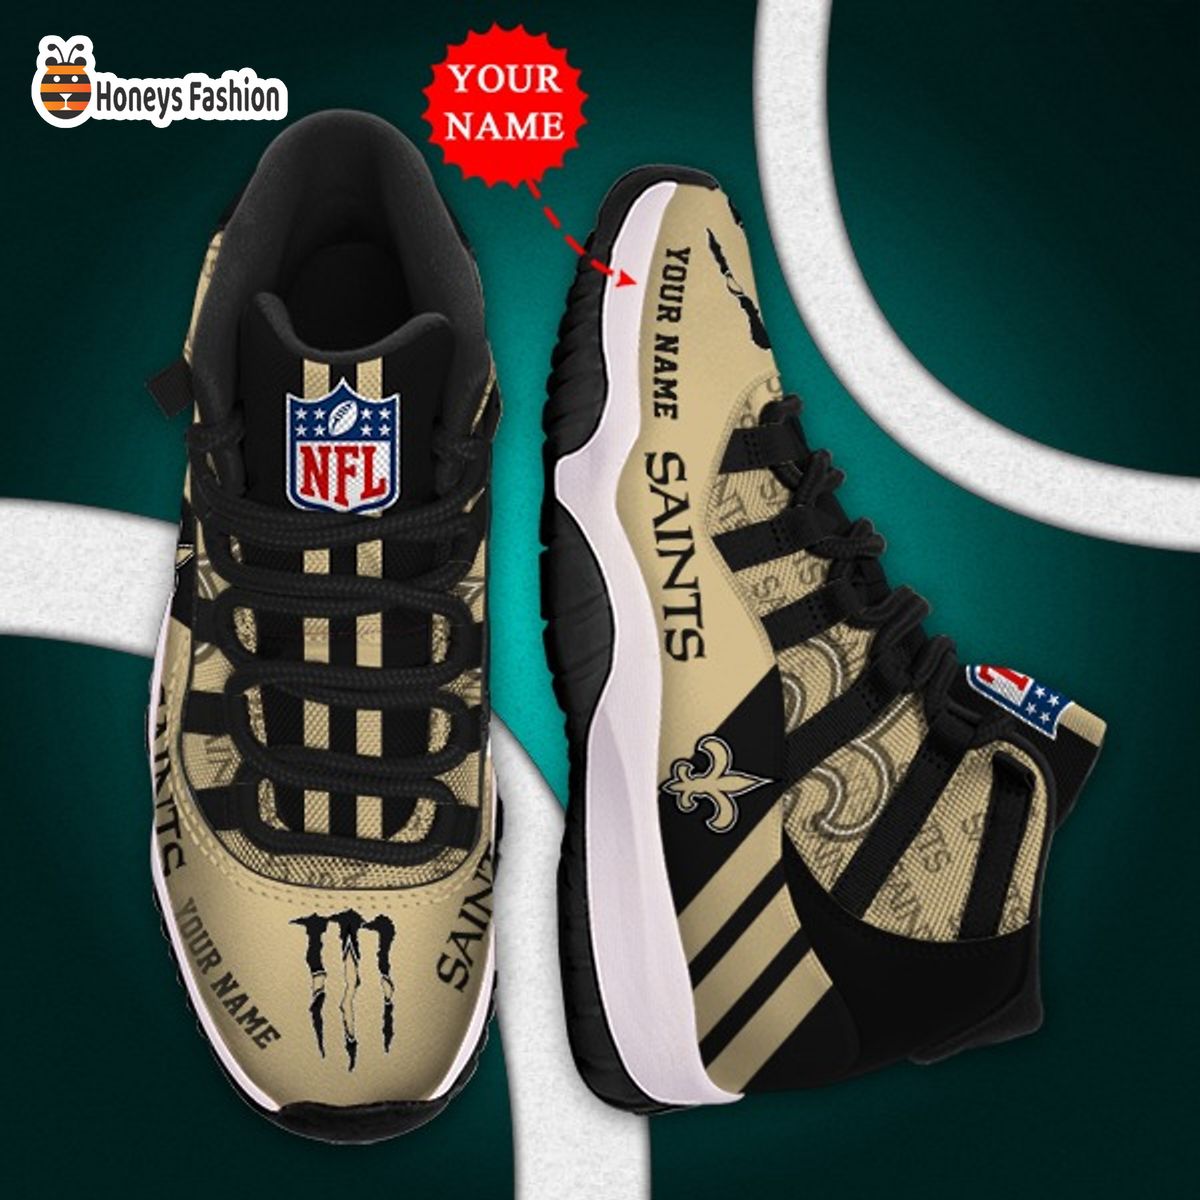 New Orleans Saints NFL Adidas Personalized Air Jordan 11 Shoes